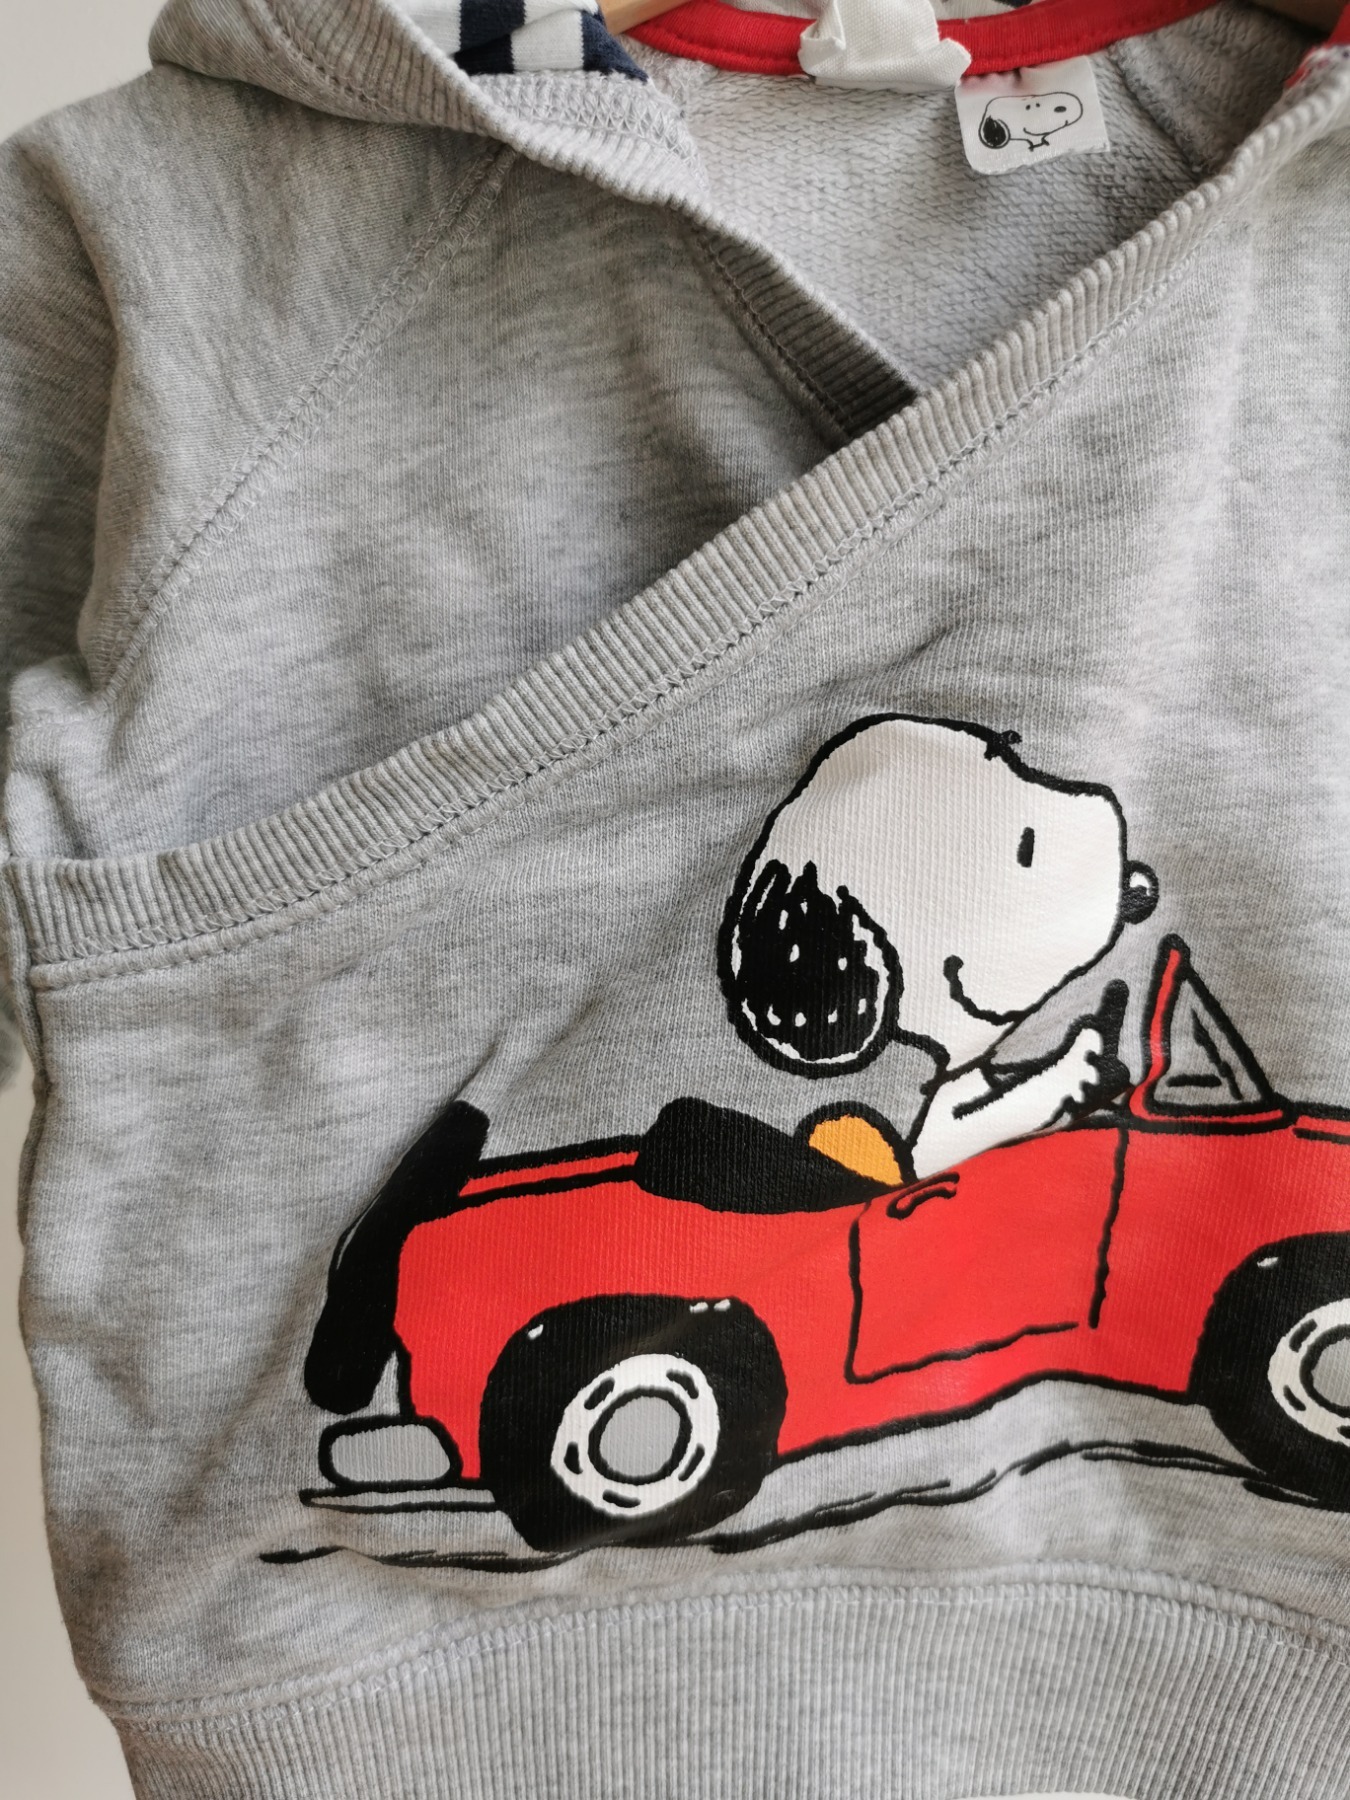 Größe erftkind Online - 68 Shop | Kapuzen-Sweatshirt H&M | Snoopy-